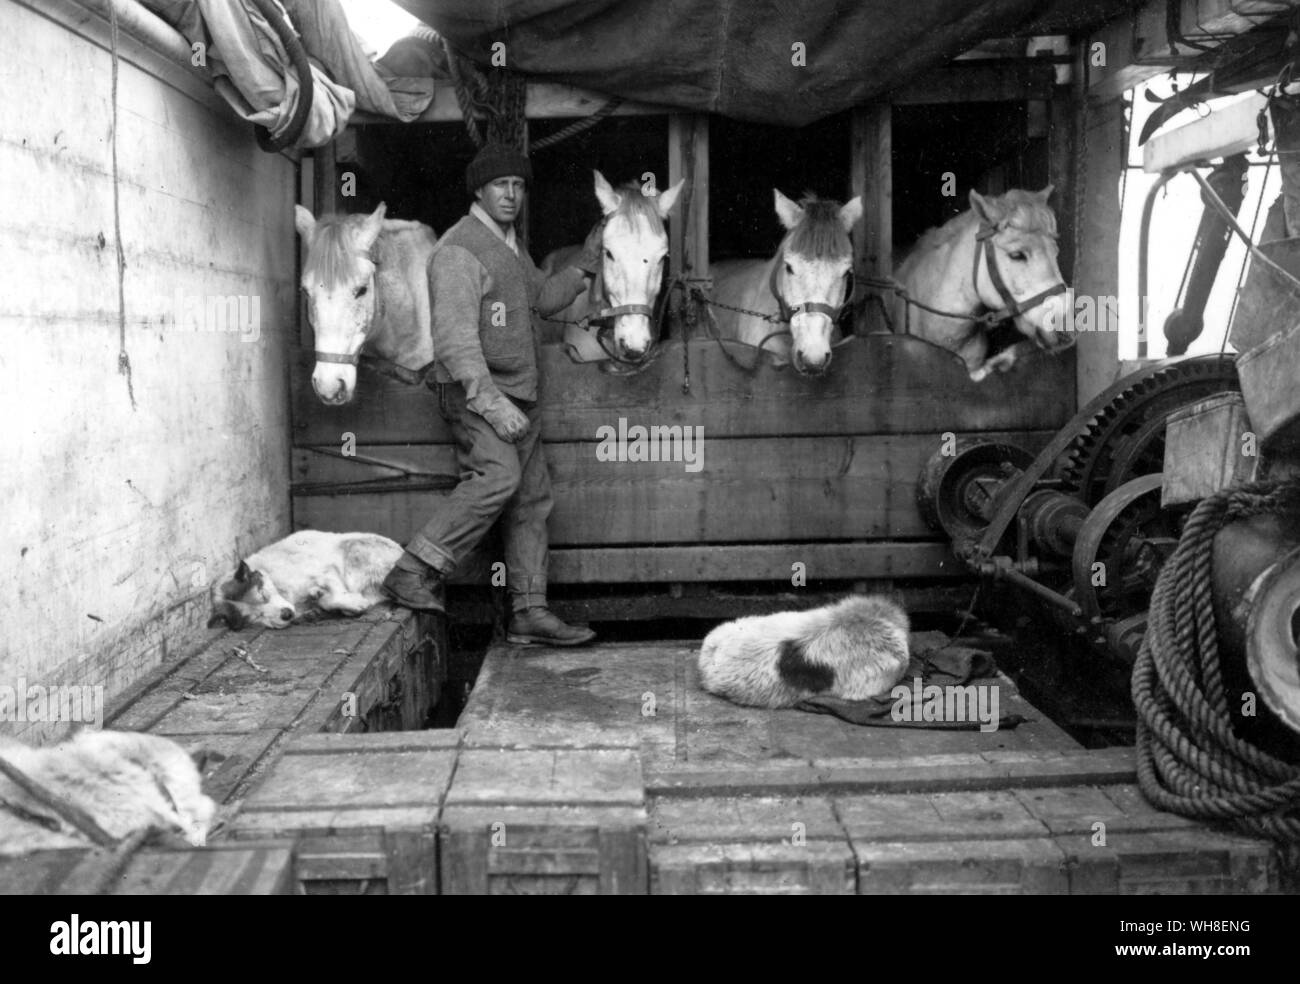 Captain Oates und einige seiner Ponys. Lawrence Edward Gnade Oates (1880-1912) war eine britische Antarktis auf Letzten Scott's Expedition. Antarktis: Der letzte Kontinent, der von Ian Cameron Seite 181. Stockfoto